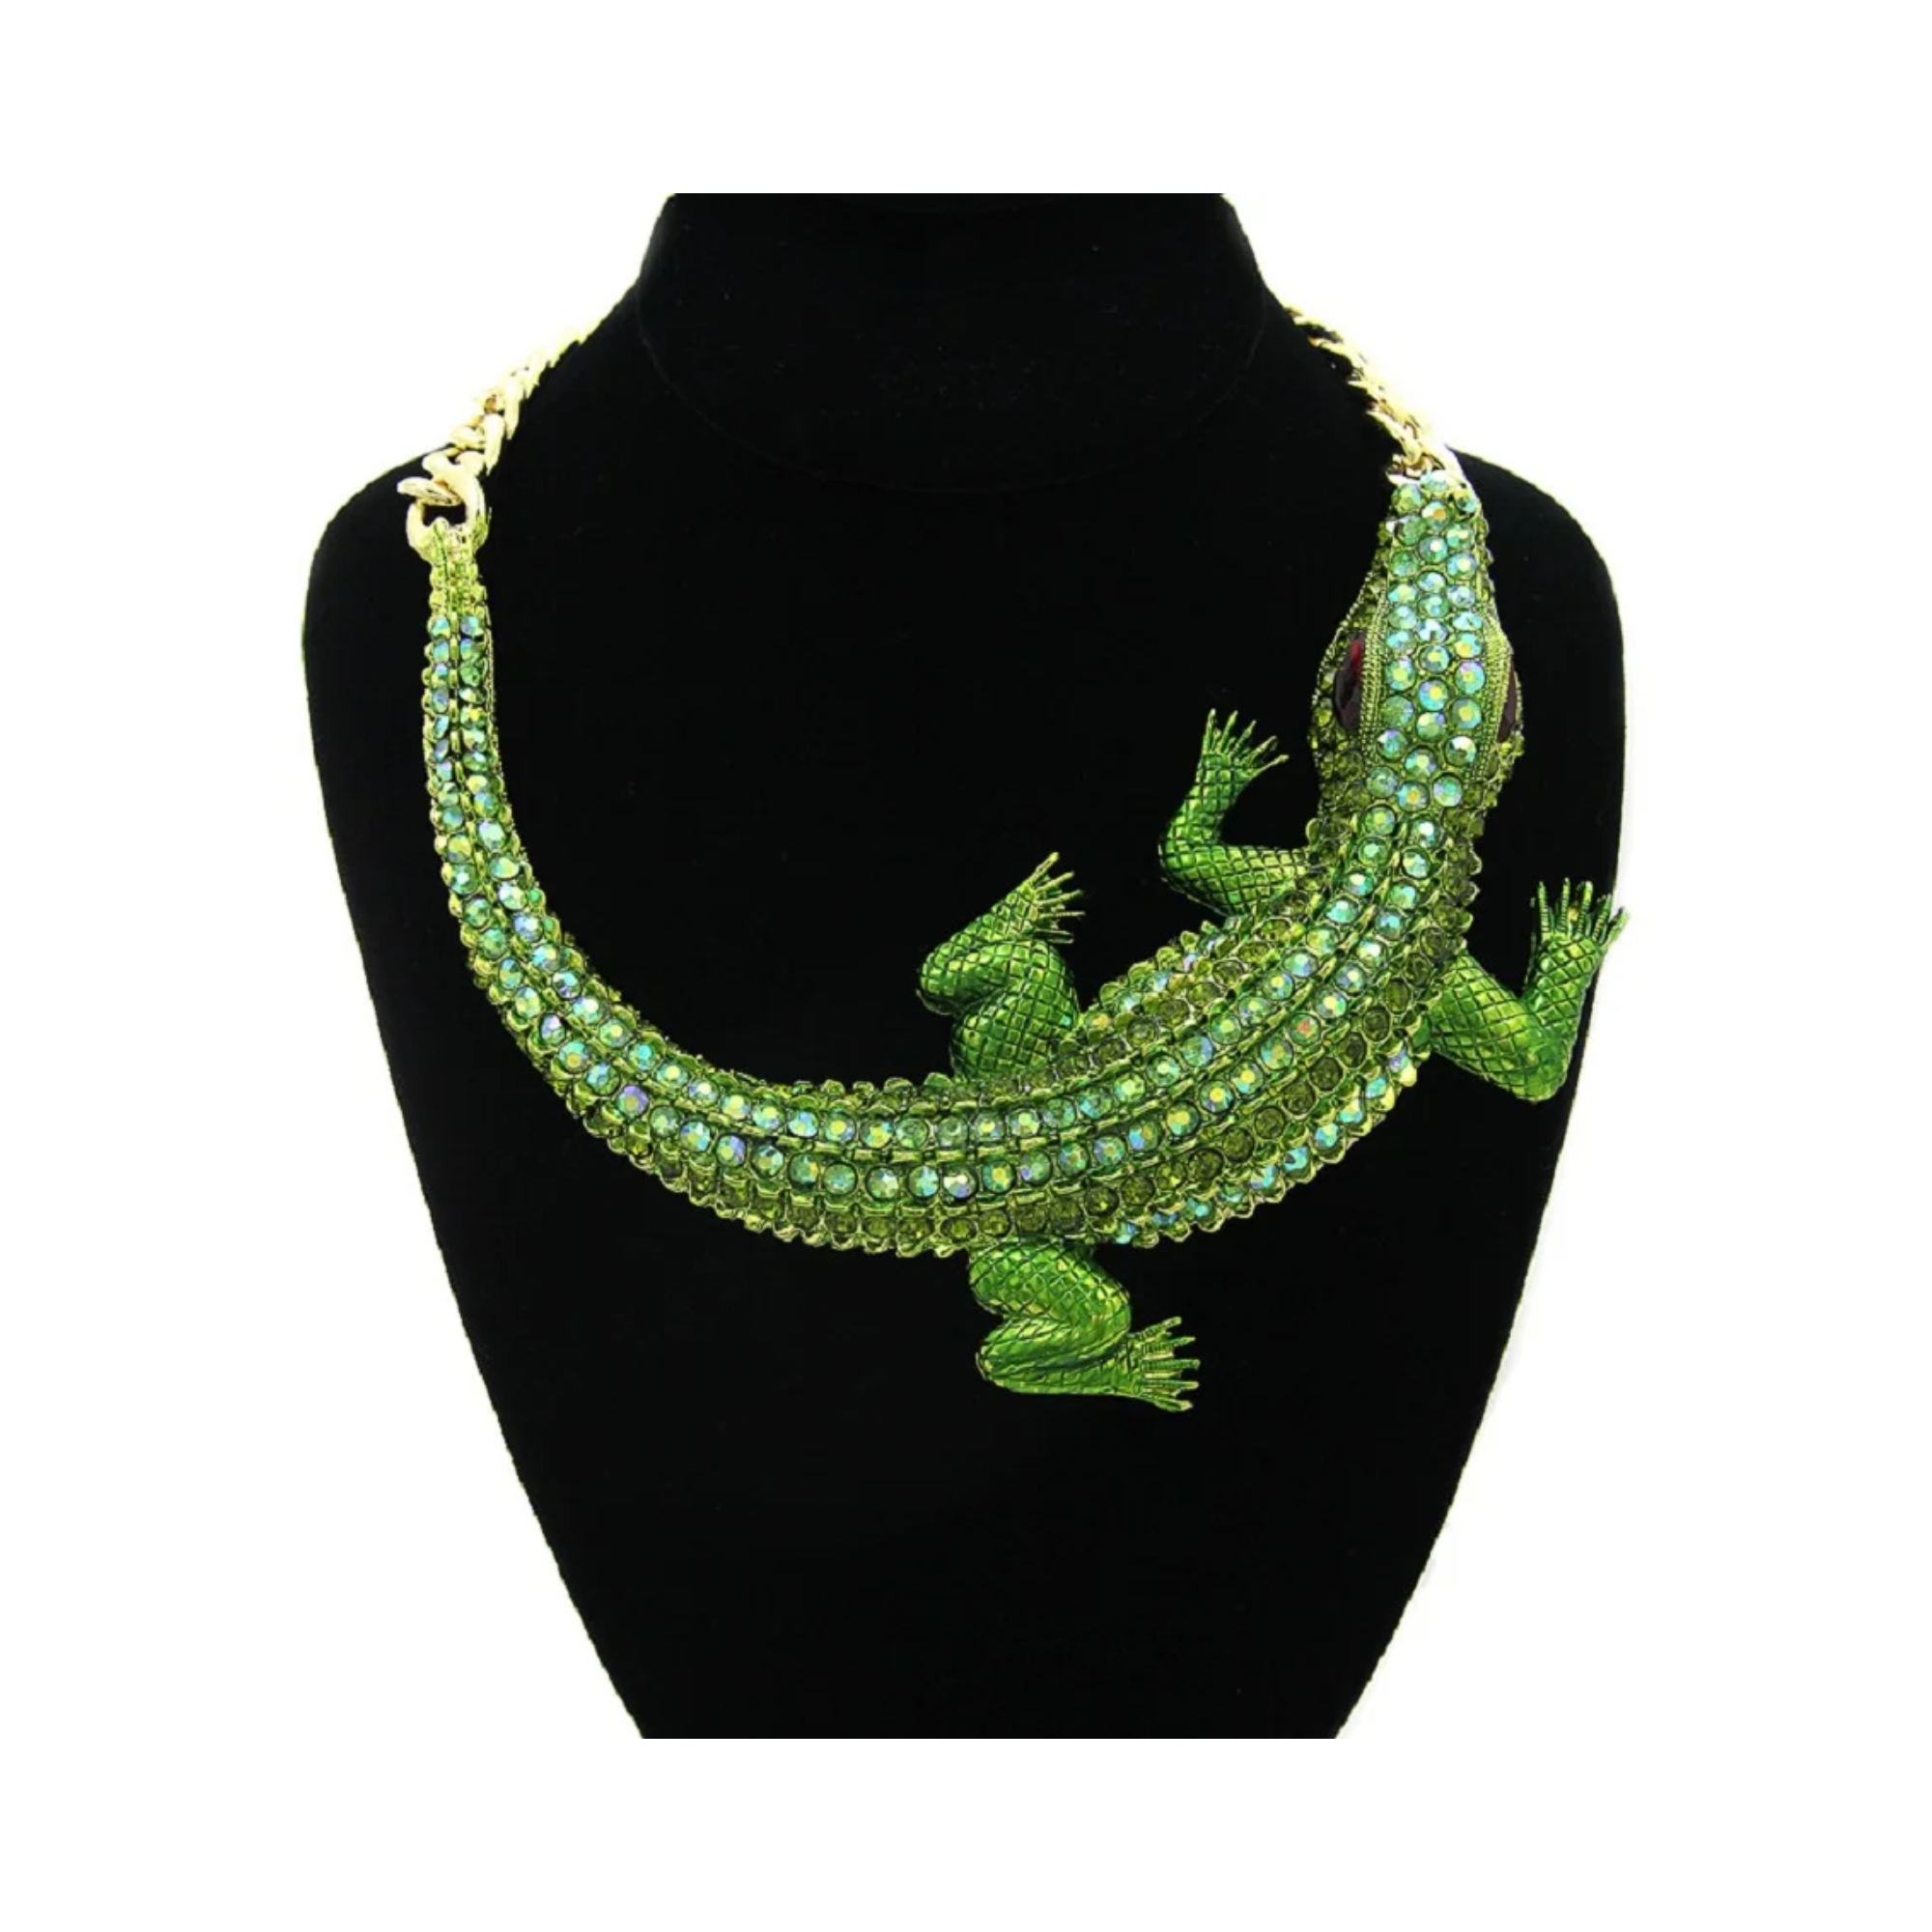 3D Crocodile Chain Necklace - Pre Order: Ships Feb 29